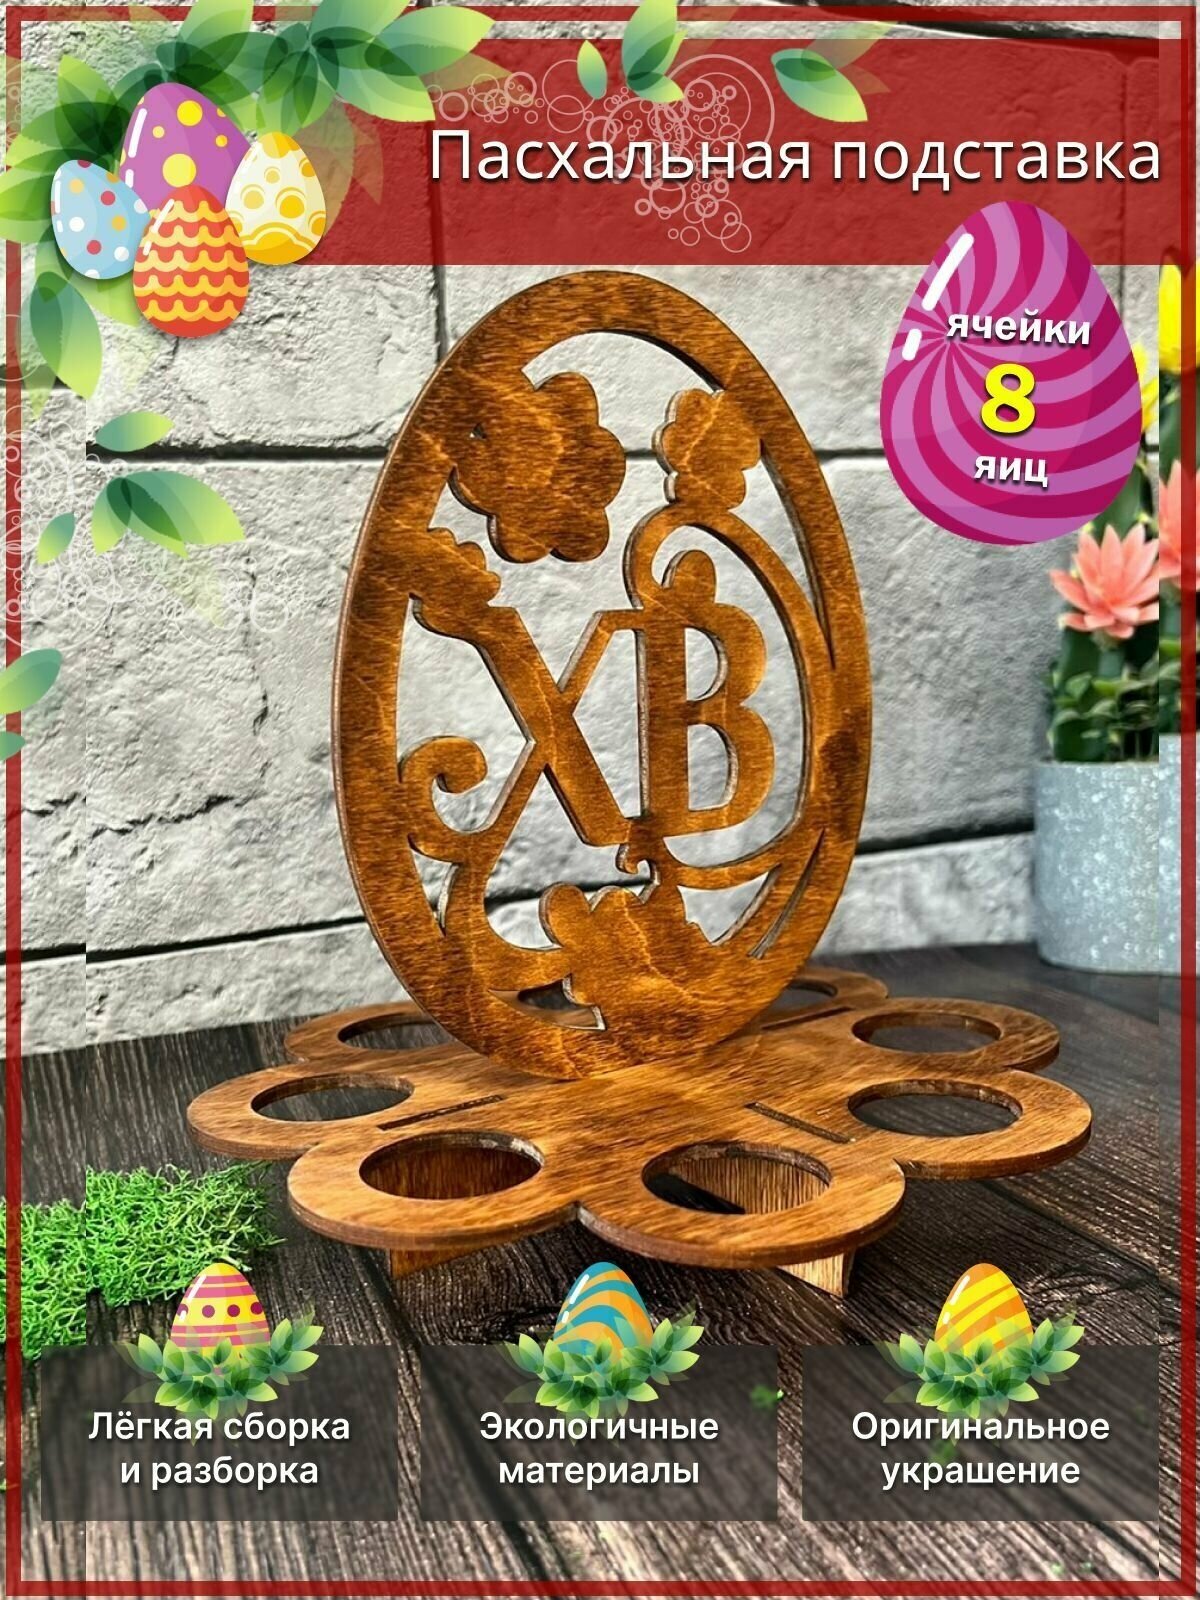 Подставка для 8 яиц "Христос воскресе" на праздник пасхи